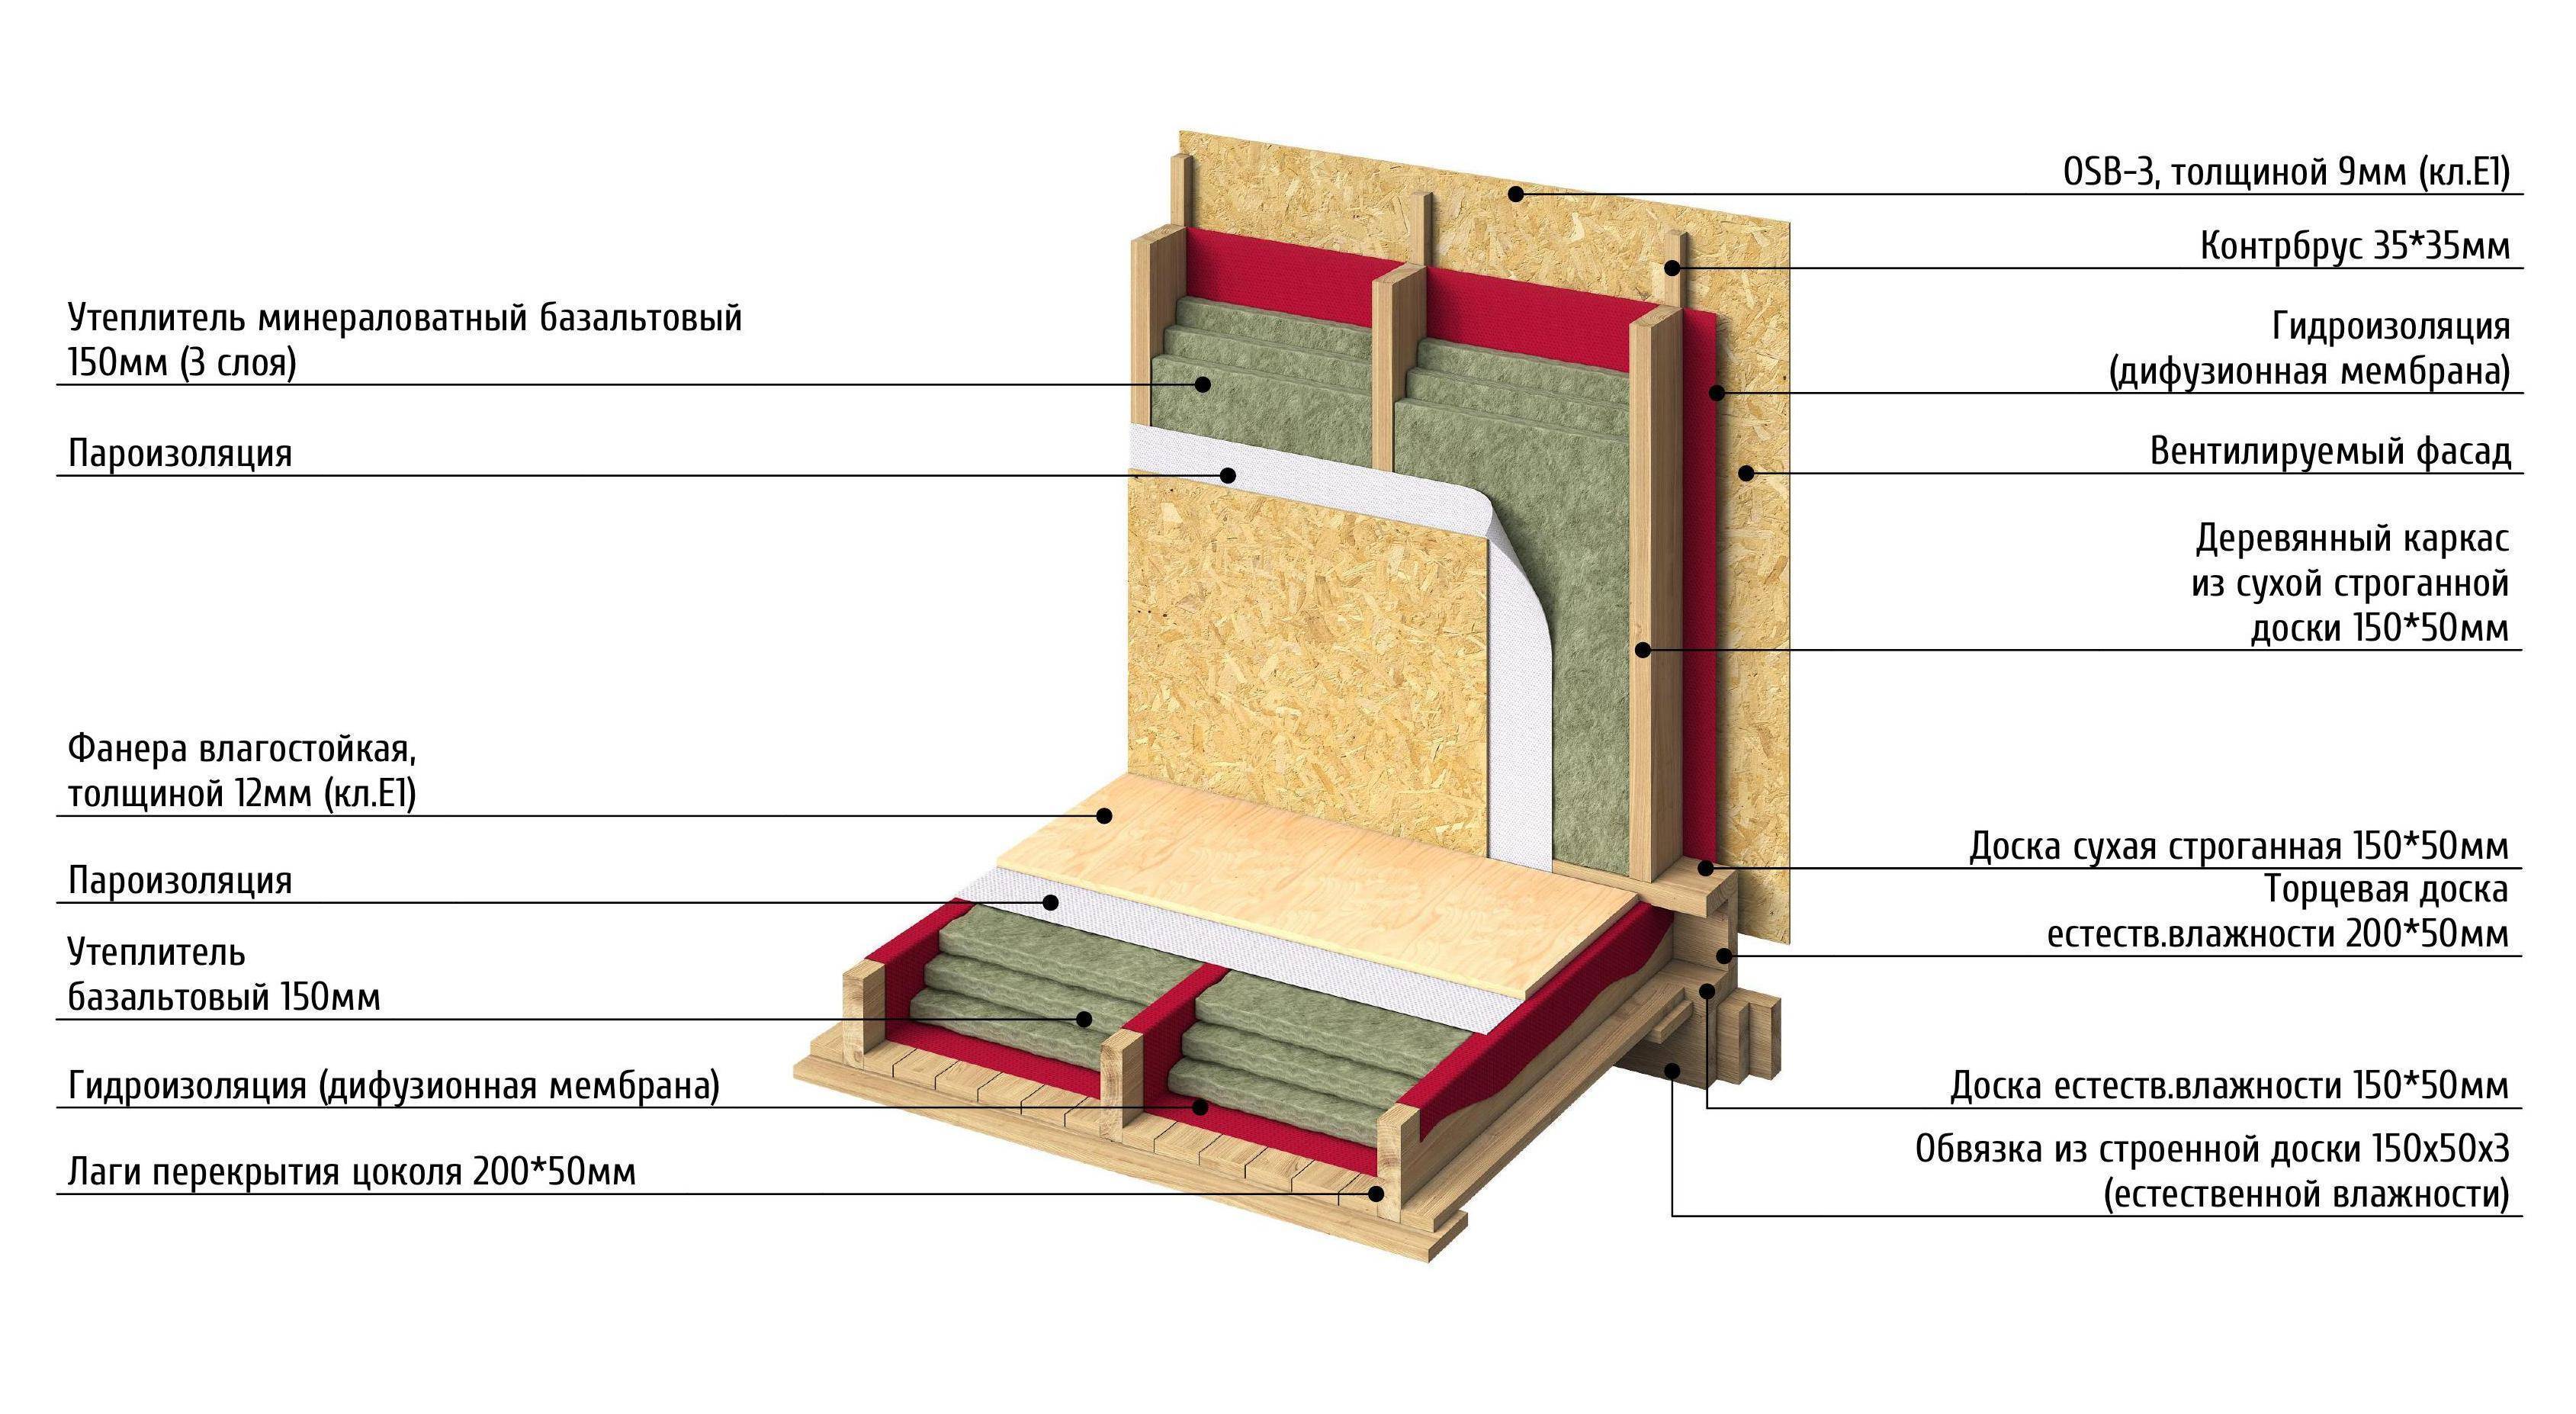 Пирог каркасного дома с осб снаружи: правильный выбор материала теплоизоляции для крыши и стен